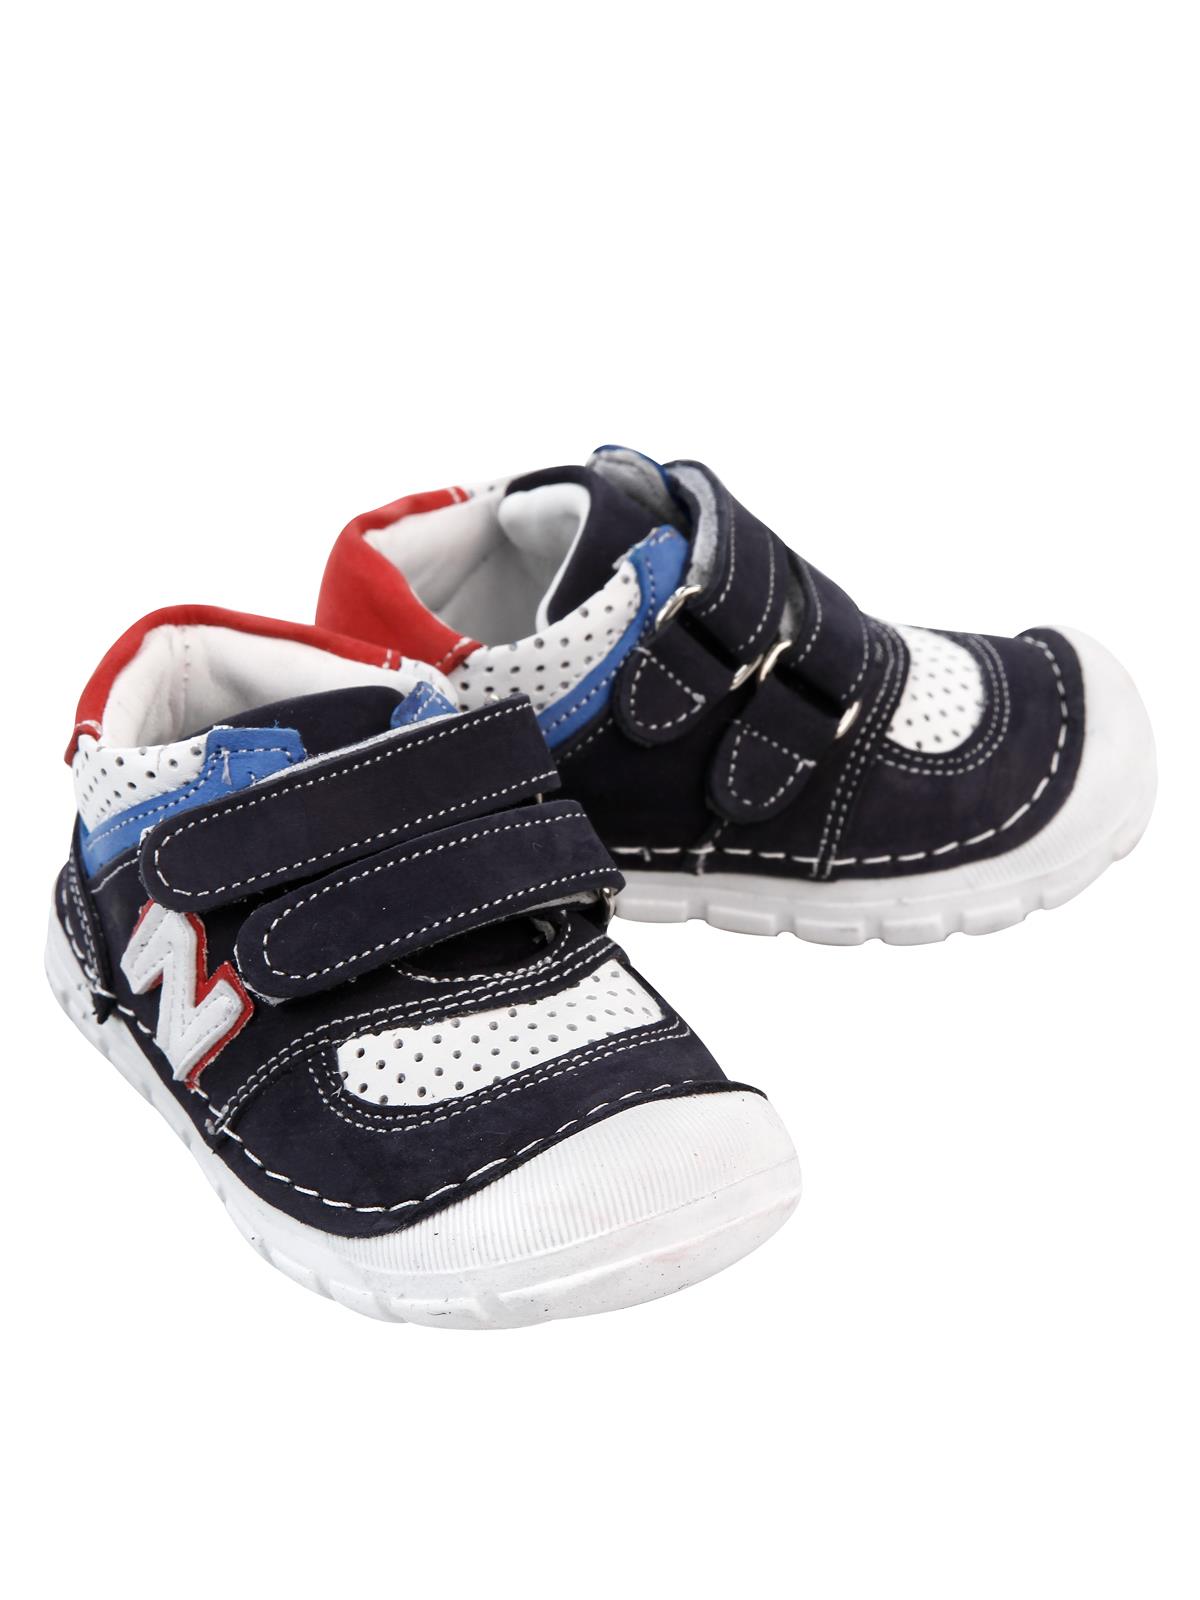 Baby Force Erkek Bebek Deri İlkadım Ayakkabısı 18-21 Numara Lacivert